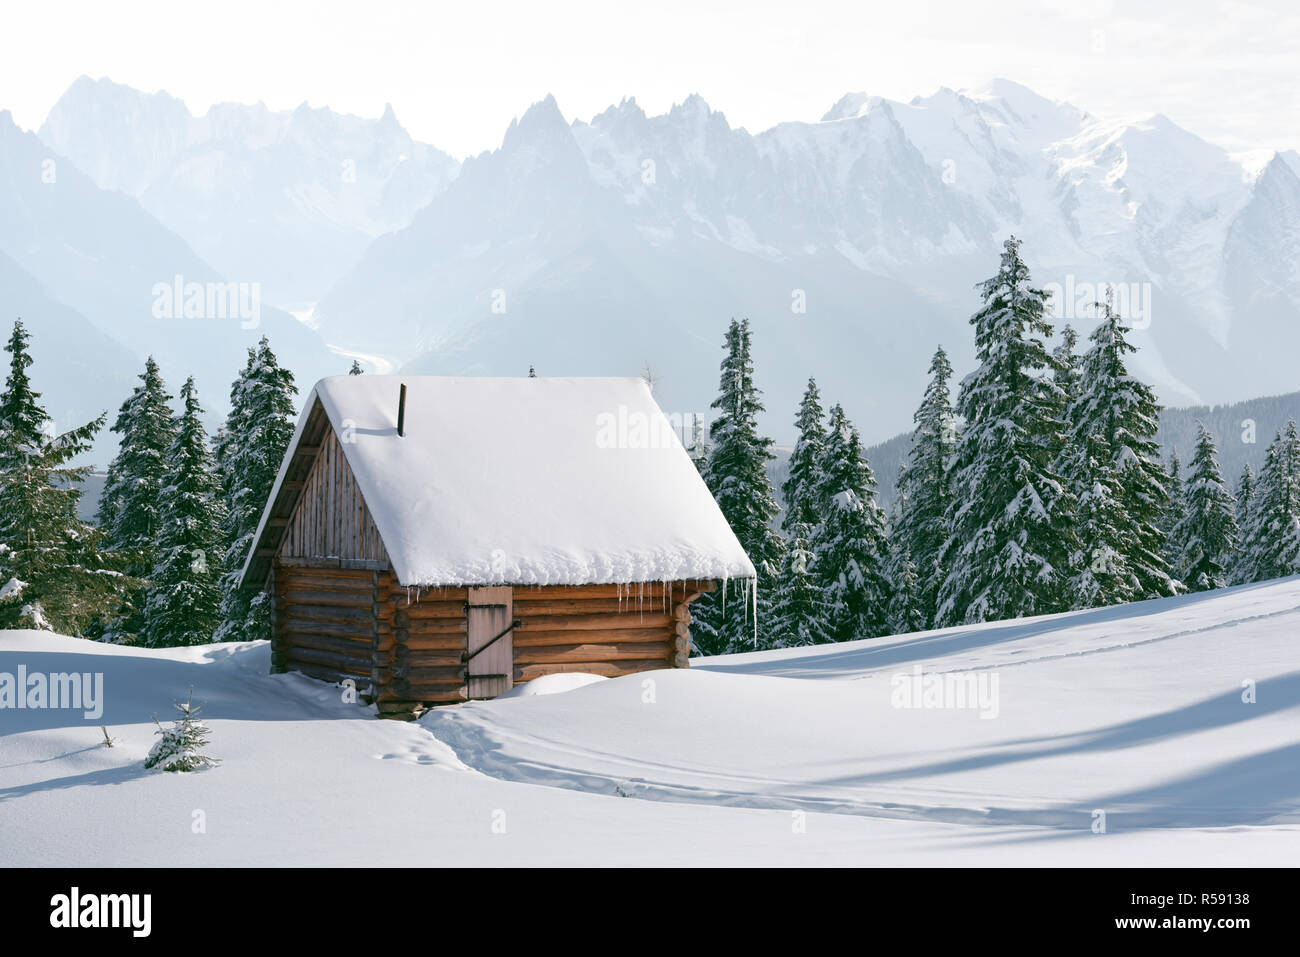 Fantastico Paesaggio Invernale Con Casa In Legno In Montagna Innevata Vacanze Di Natale Concept Foto Stock Alamy